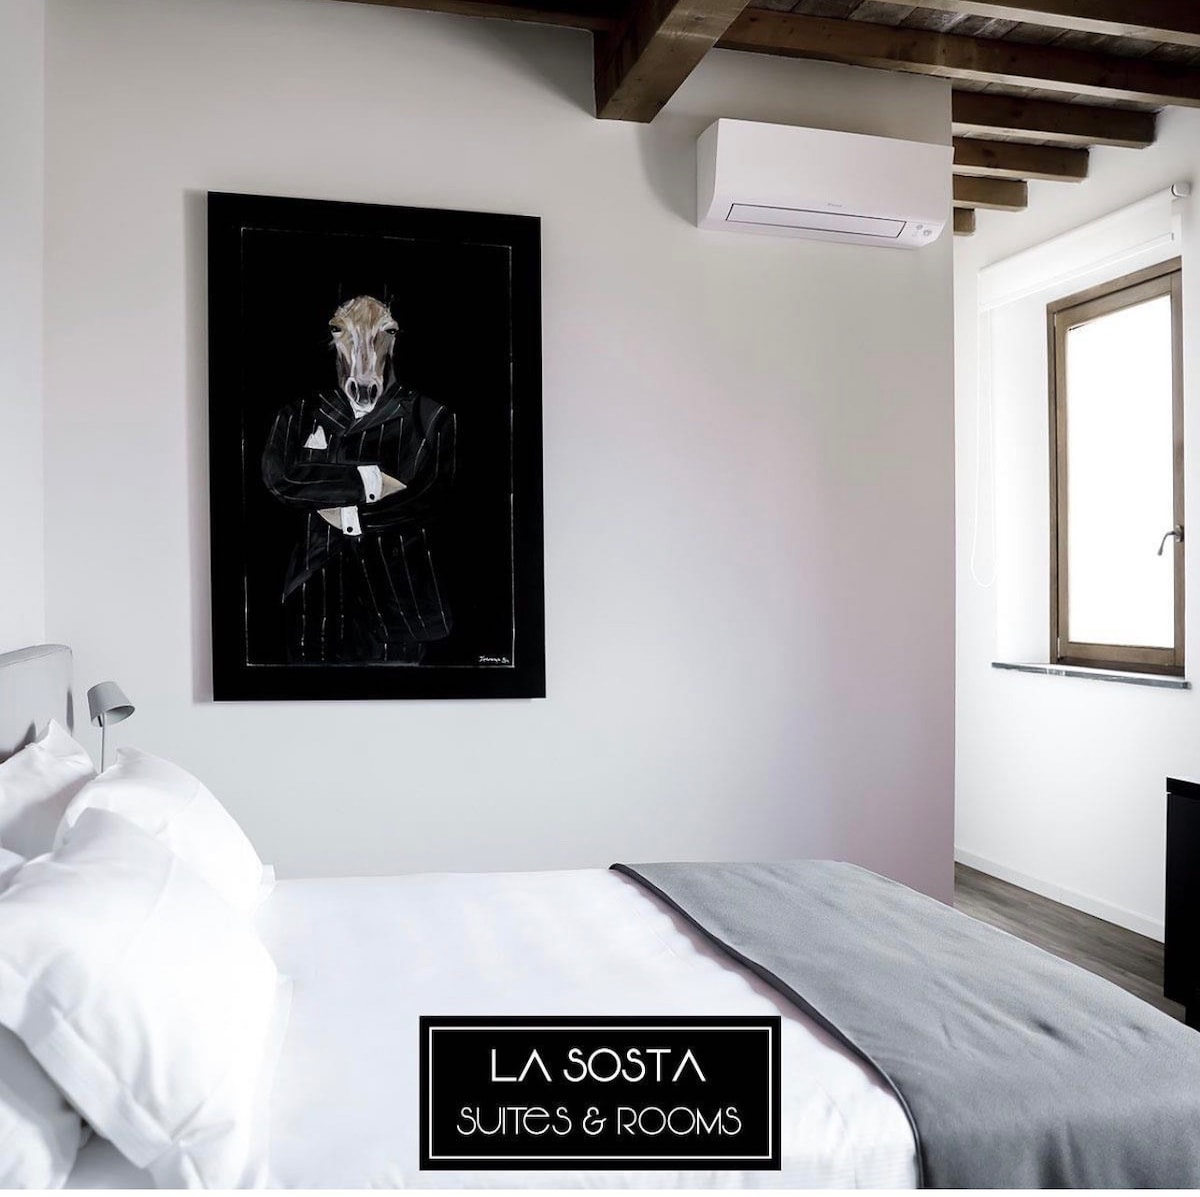 La Sosta Suites & Rooms